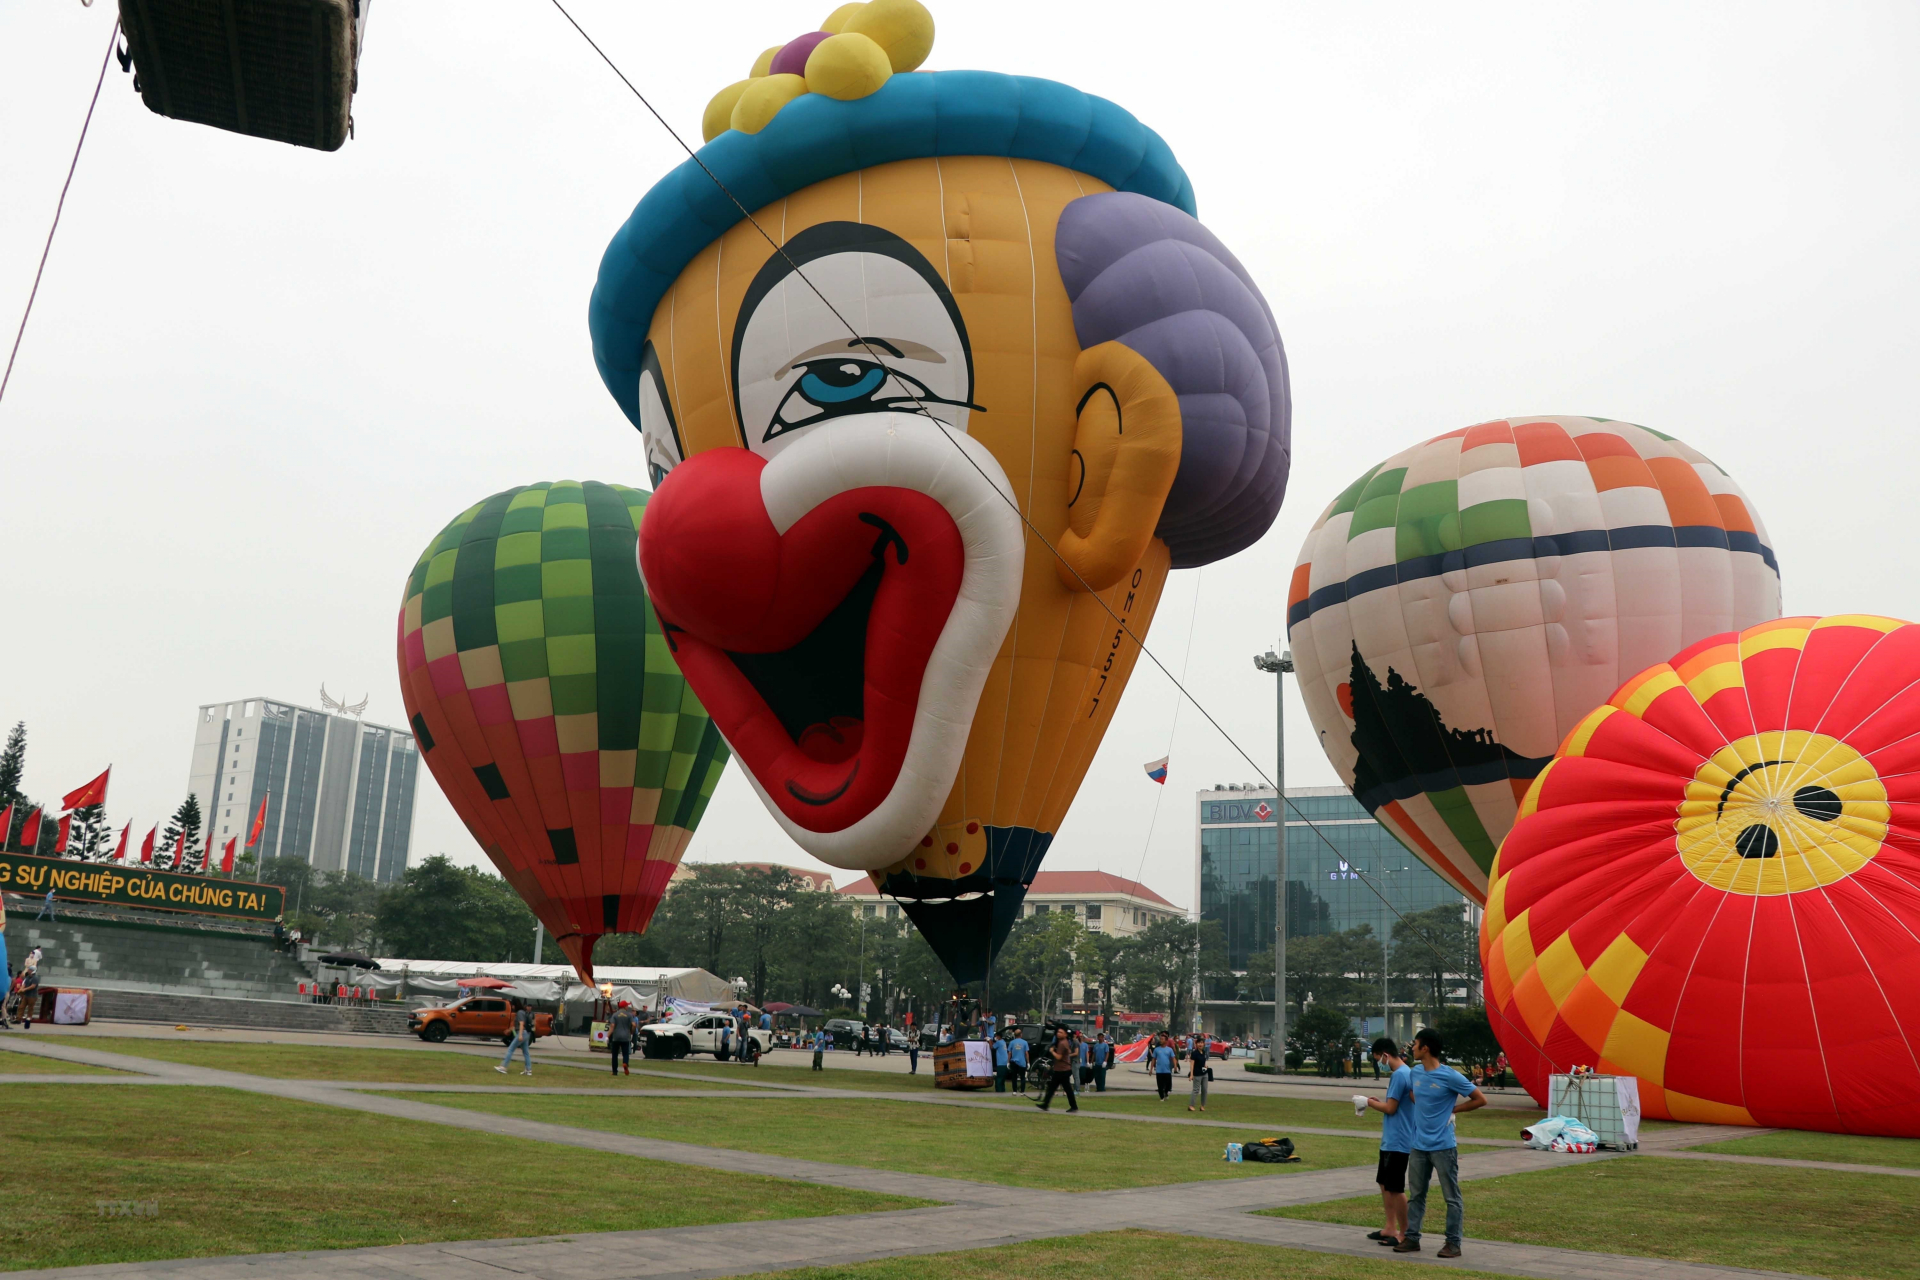 Các khinh khí cầu tại lễ hội do các phi công quốc tế dày dạn kinh nghiệm đến từ nhiều quốc gia, vùng lãnh thổ như Nhật Bản, Hàn Quốc, Thái Lan, Malaysia, Hà Lan, Ấn Độ, Slovakia, Nga, Đài Loan (Trung Quốc) và Việt Nam điều khiển